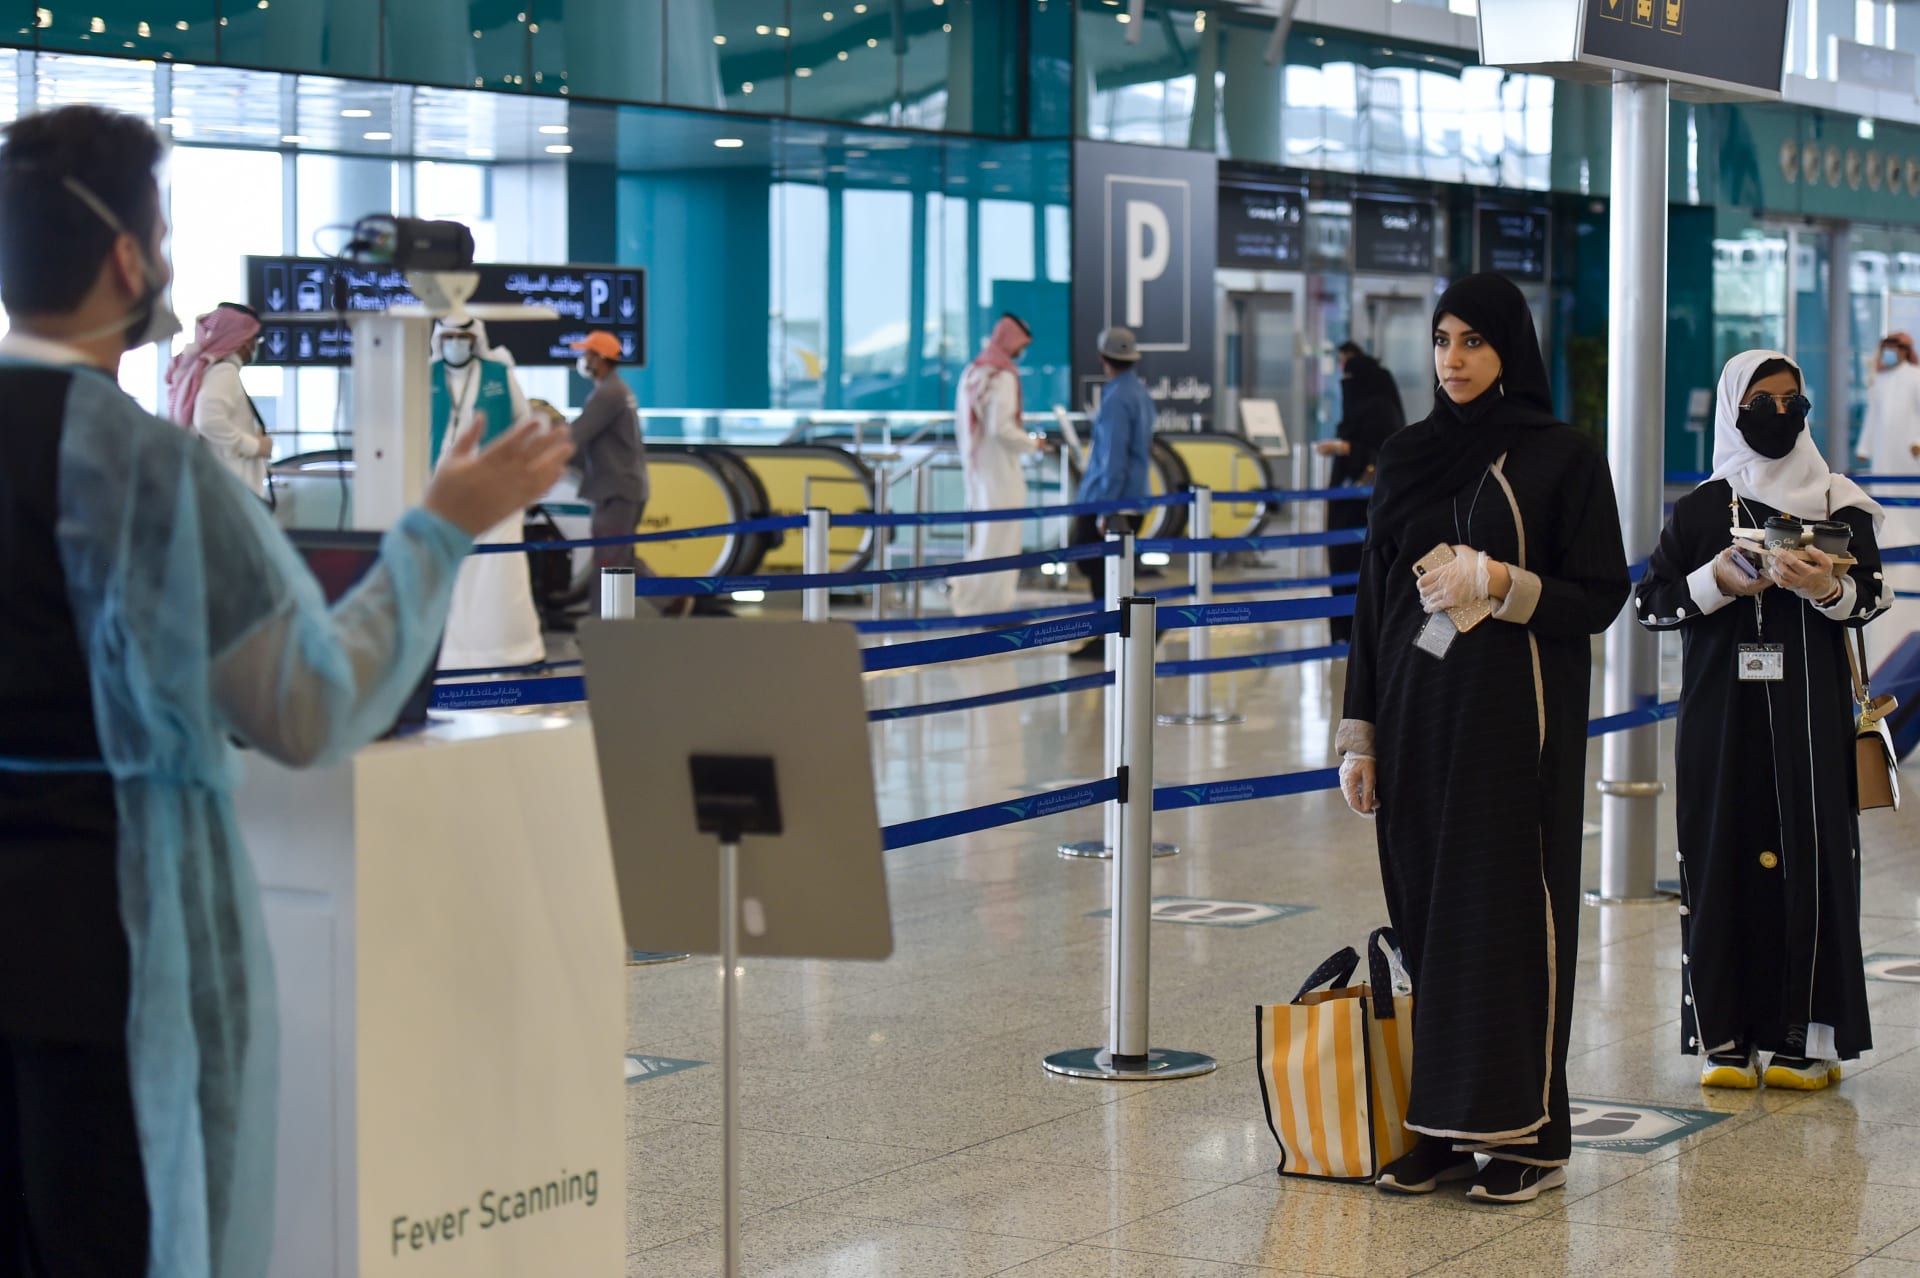 السعودية تُمدد موعد رفع تعليق السفر وفتح منافذها إلى 17 مايو بدلا من 31 مارس